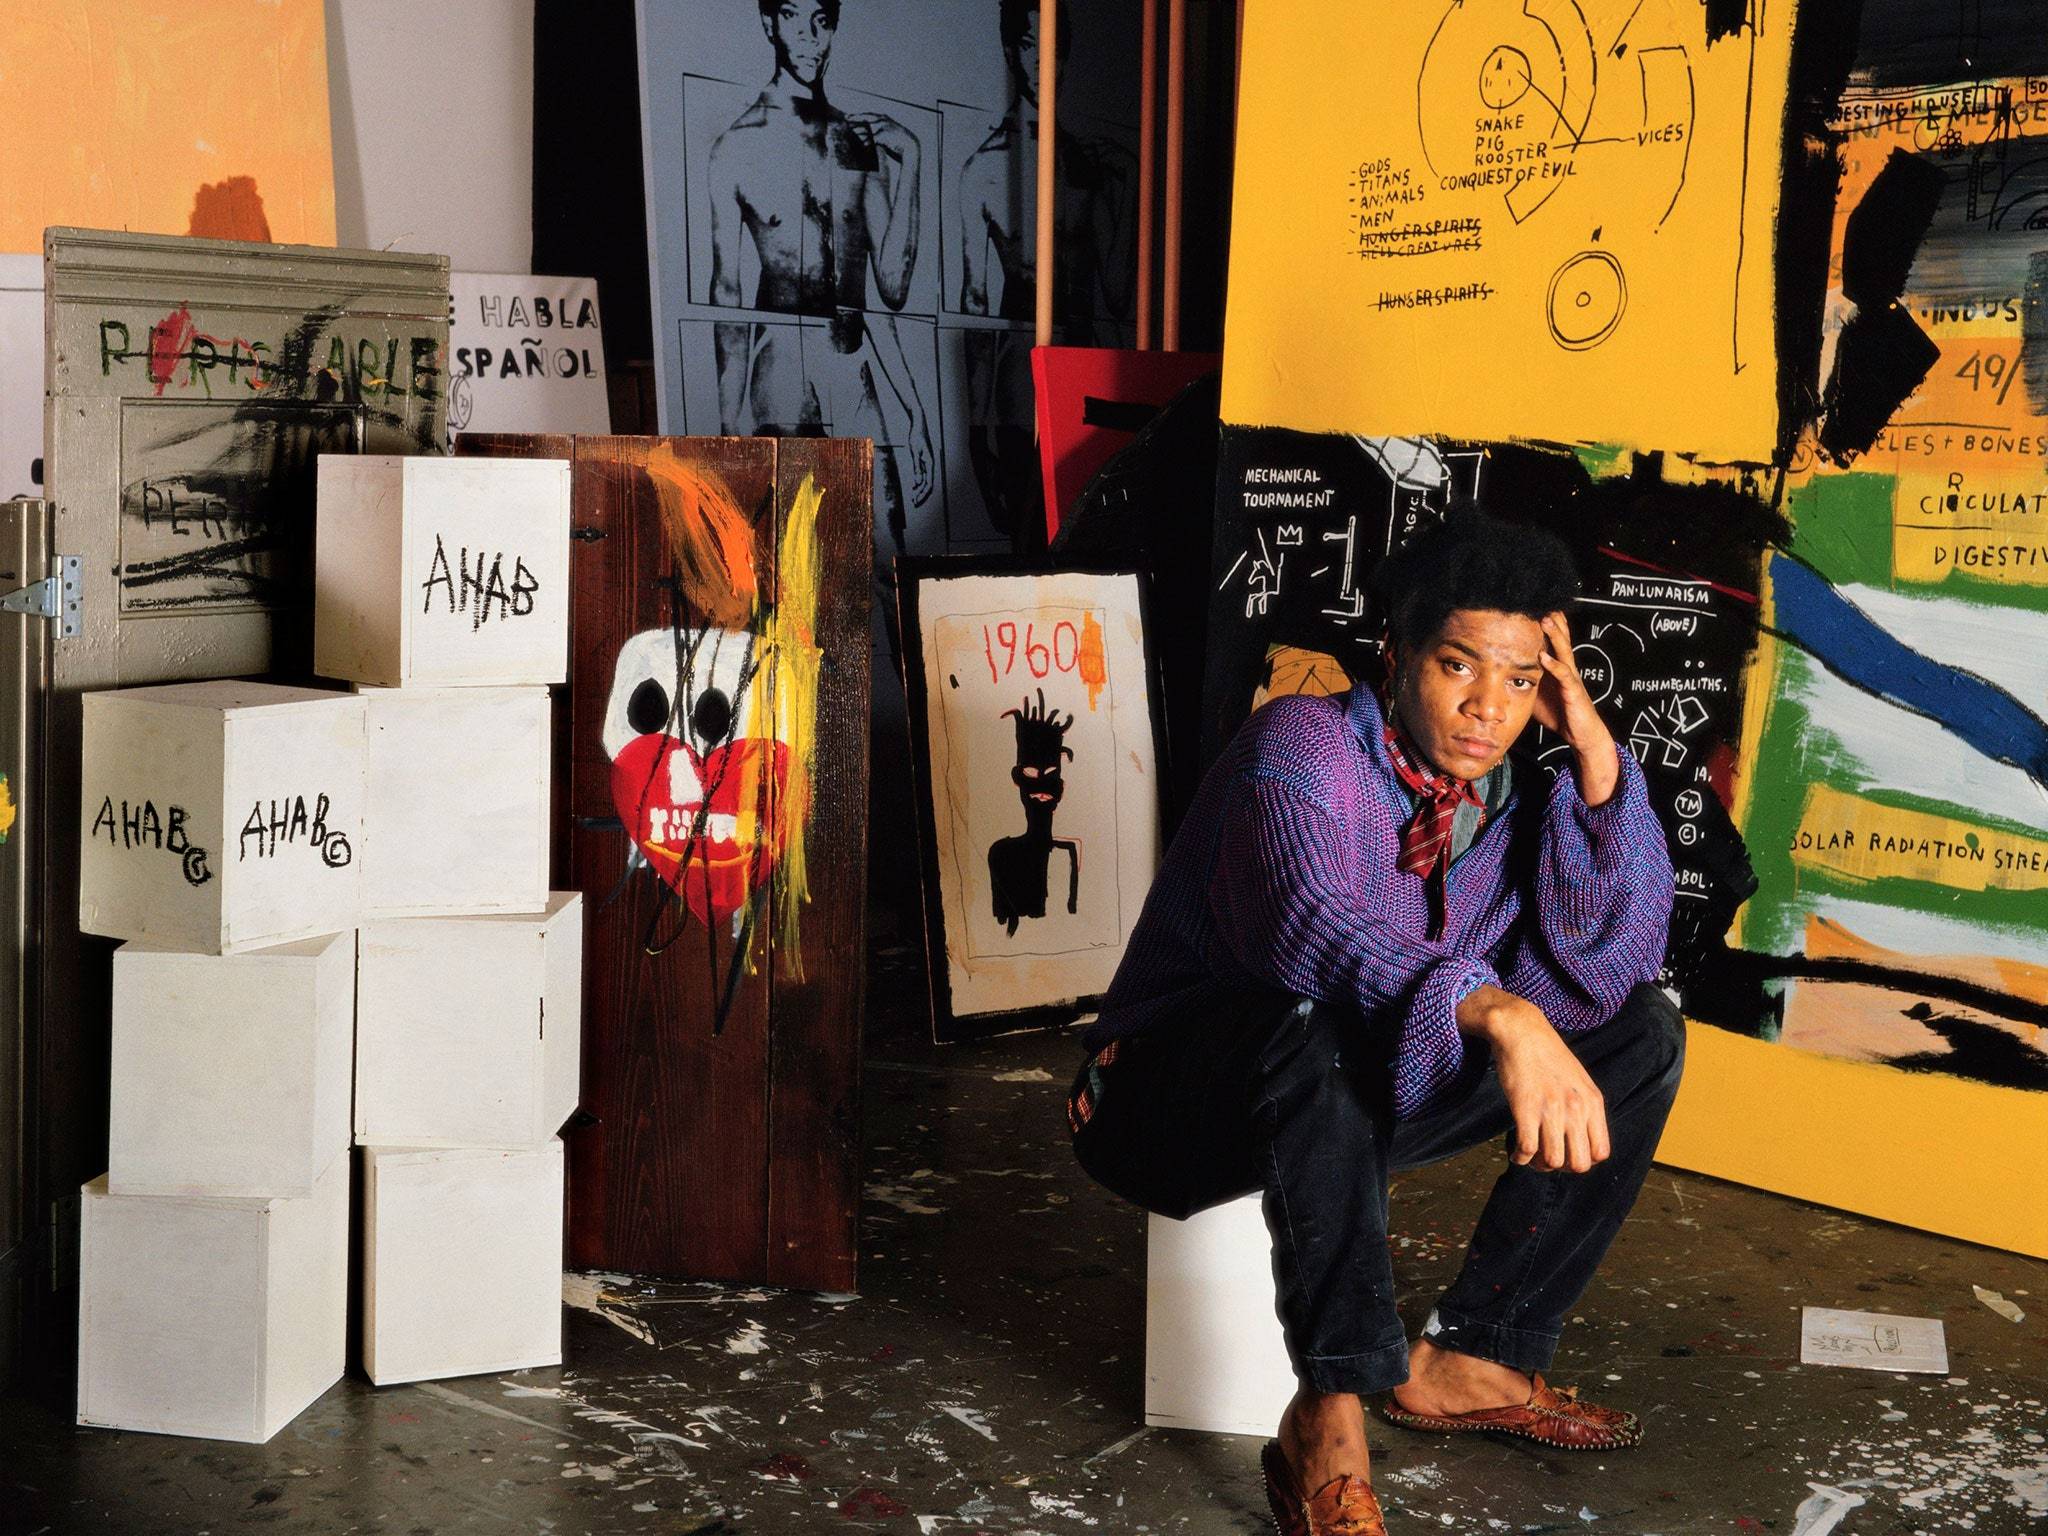 让-米歇尔·巴斯奎特(jean-michel basquiat)1960.12.22   1988.08.